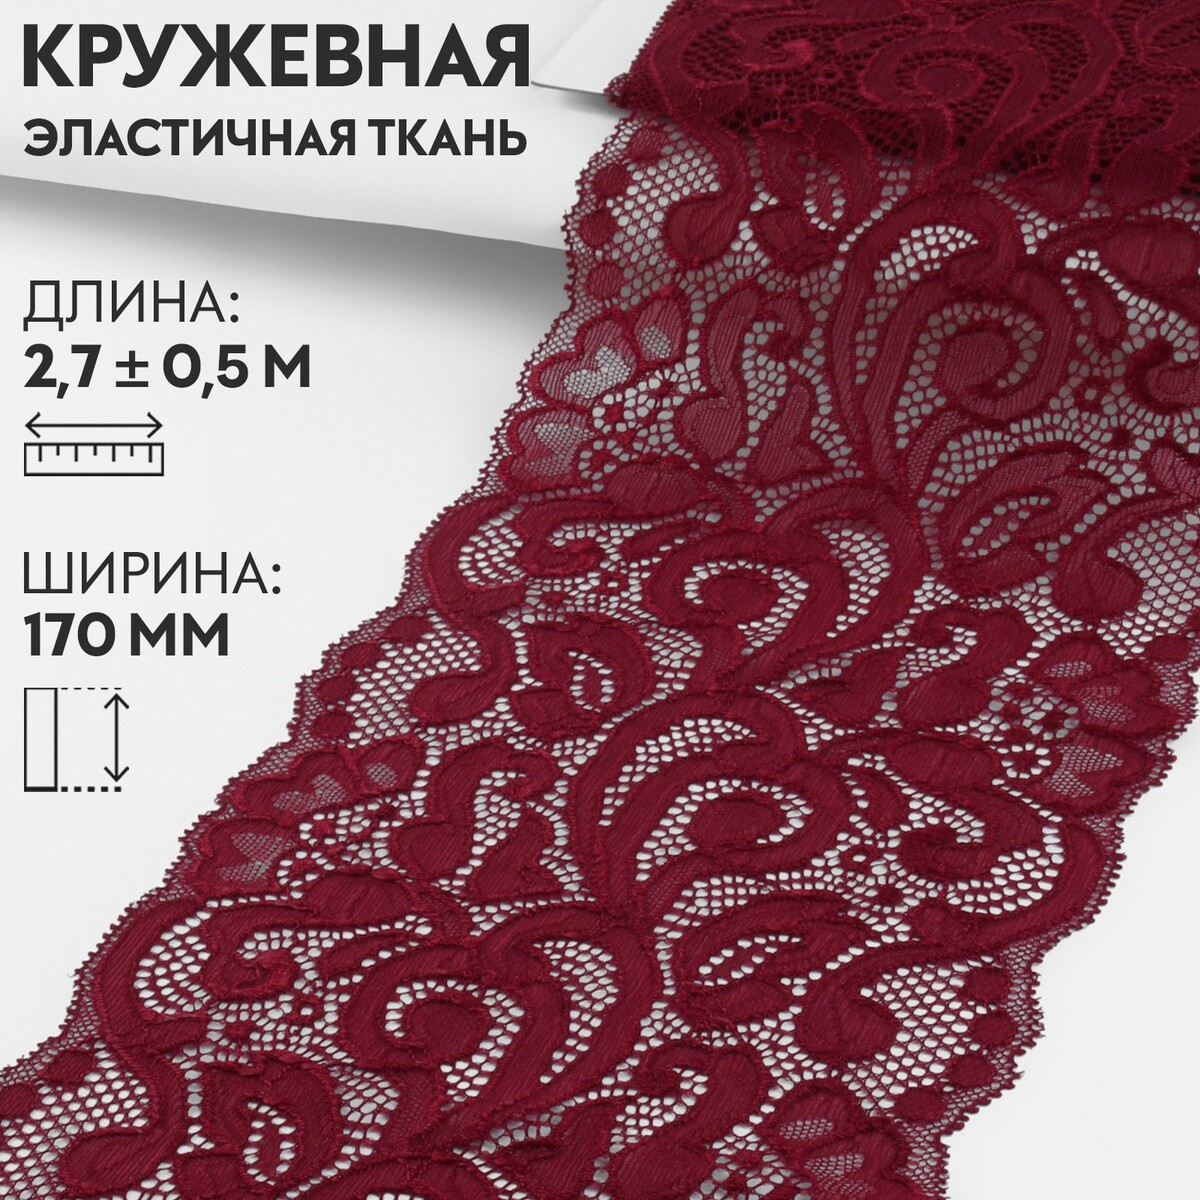 Кружевная эластичная ткань, 170 мм × 2,7 ± 0,5 м, цвет бордовый